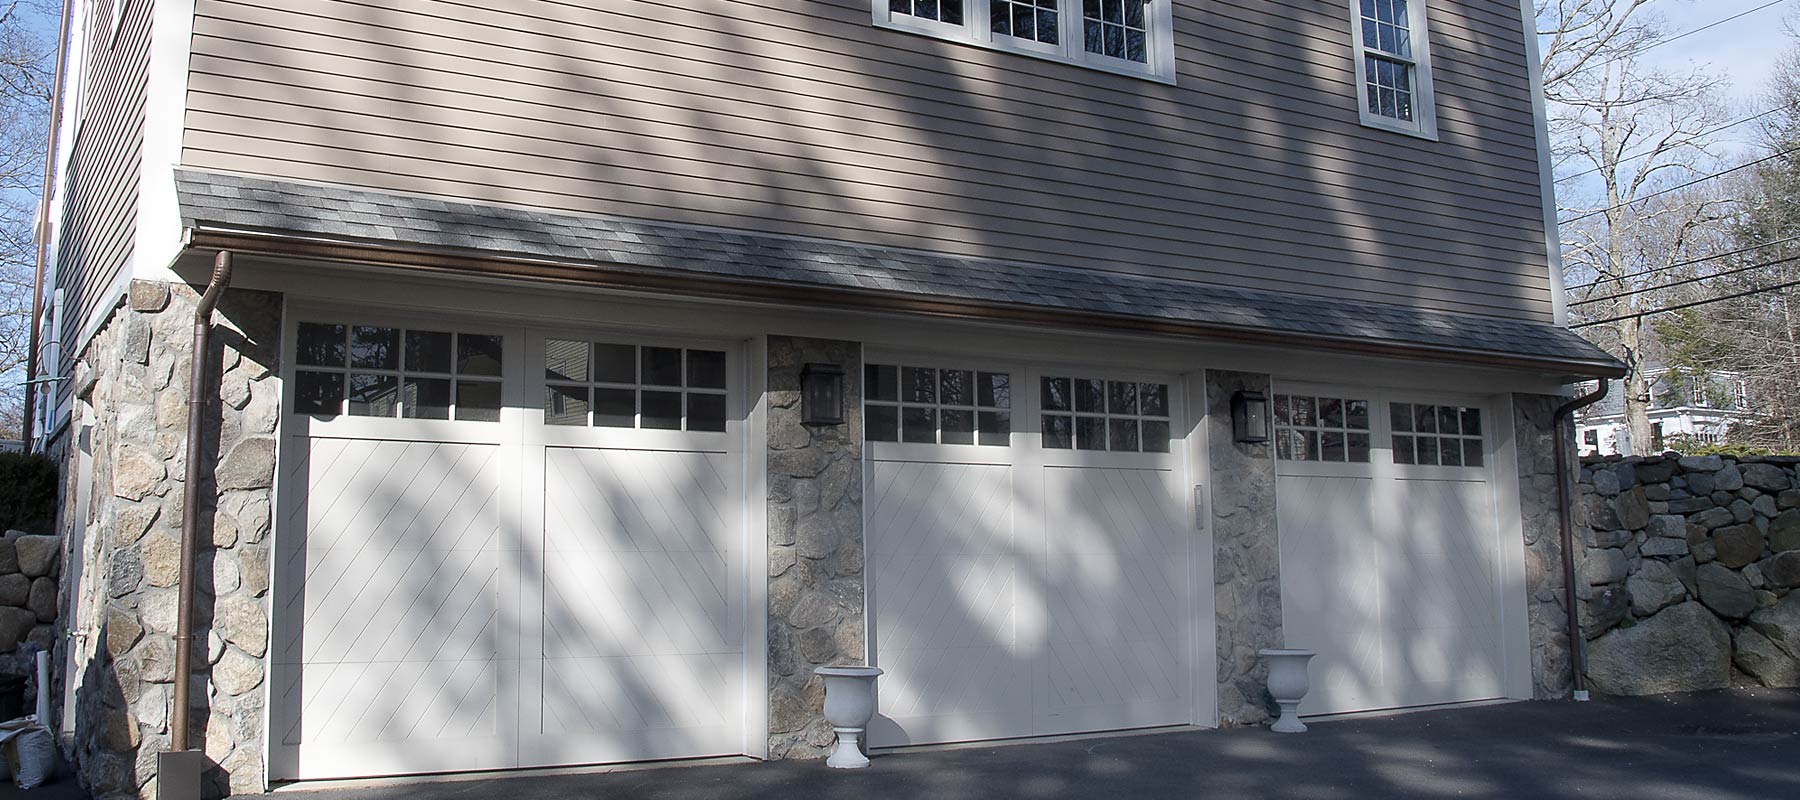 triple Garage door intallation, sudbury, ma